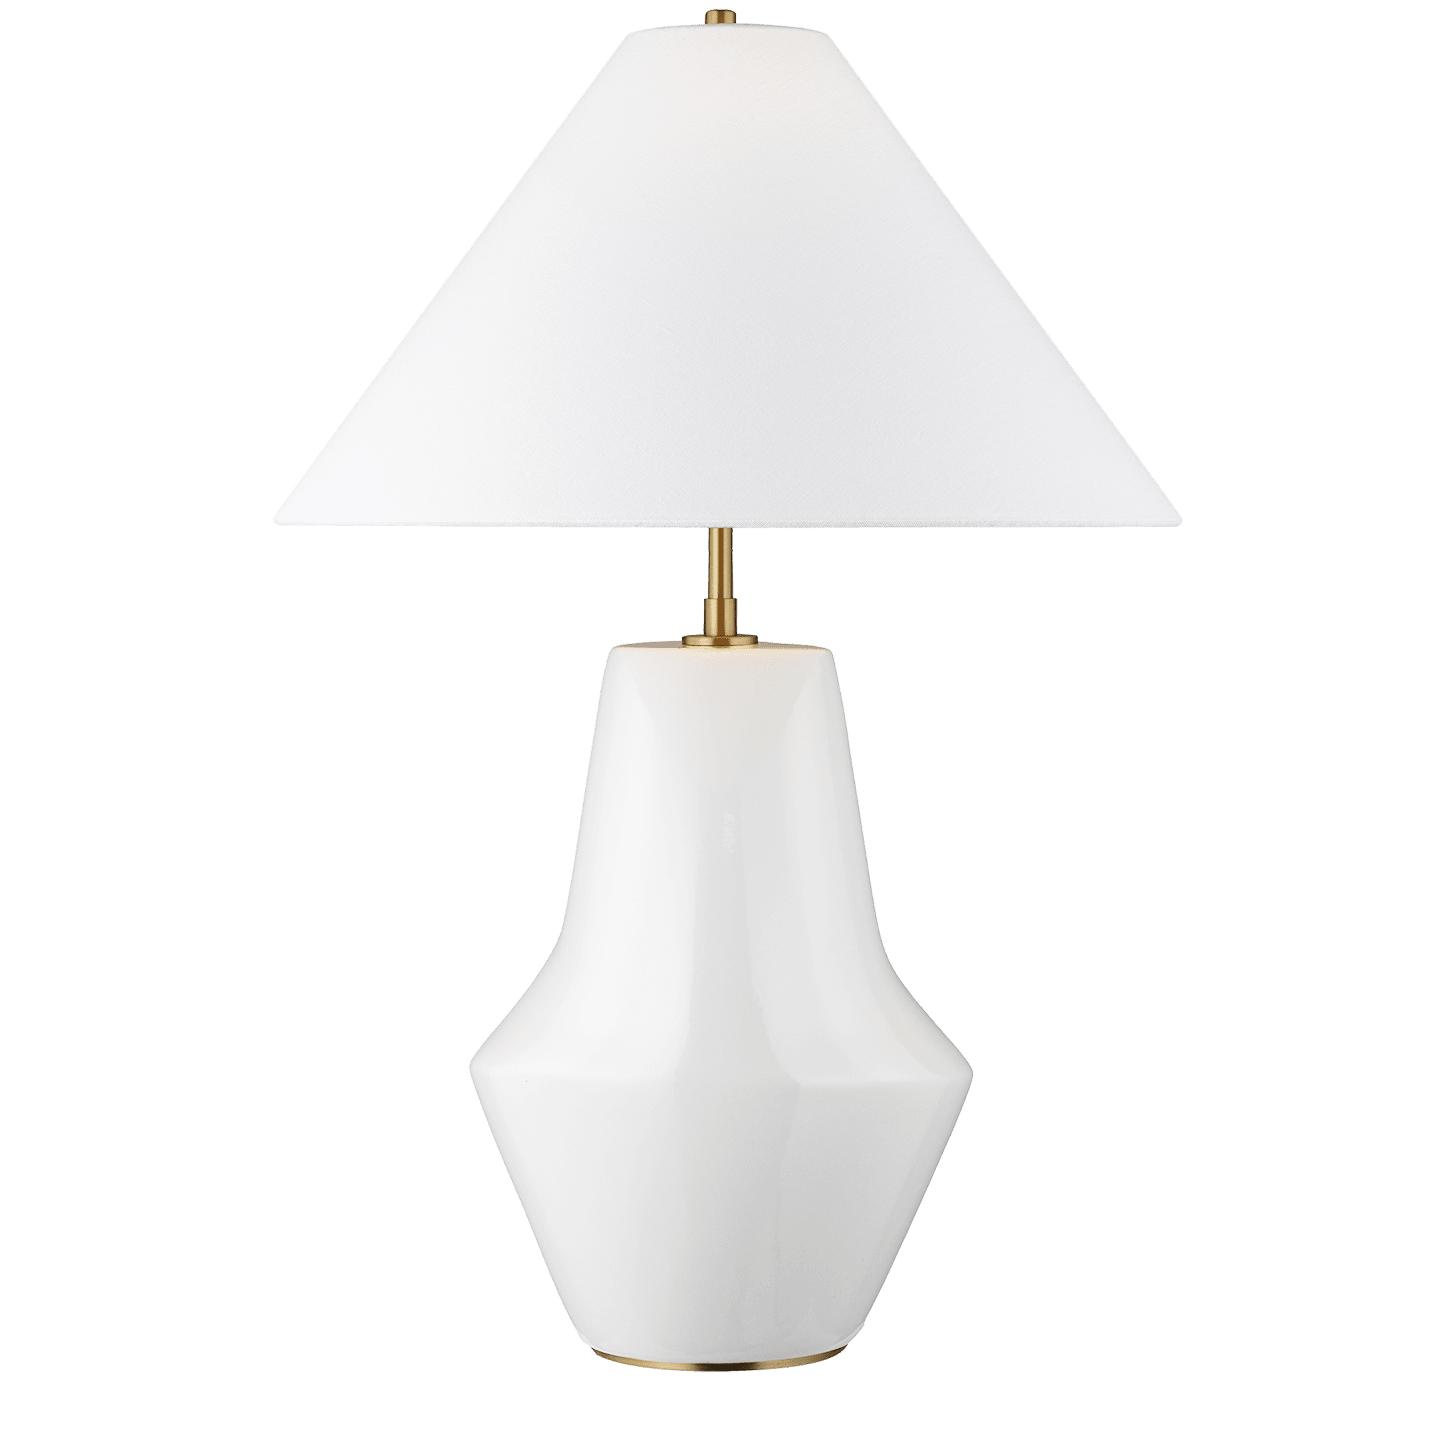 Купить Настольная лампа Contour Short Table Lamp в интернет-магазине roooms.ru